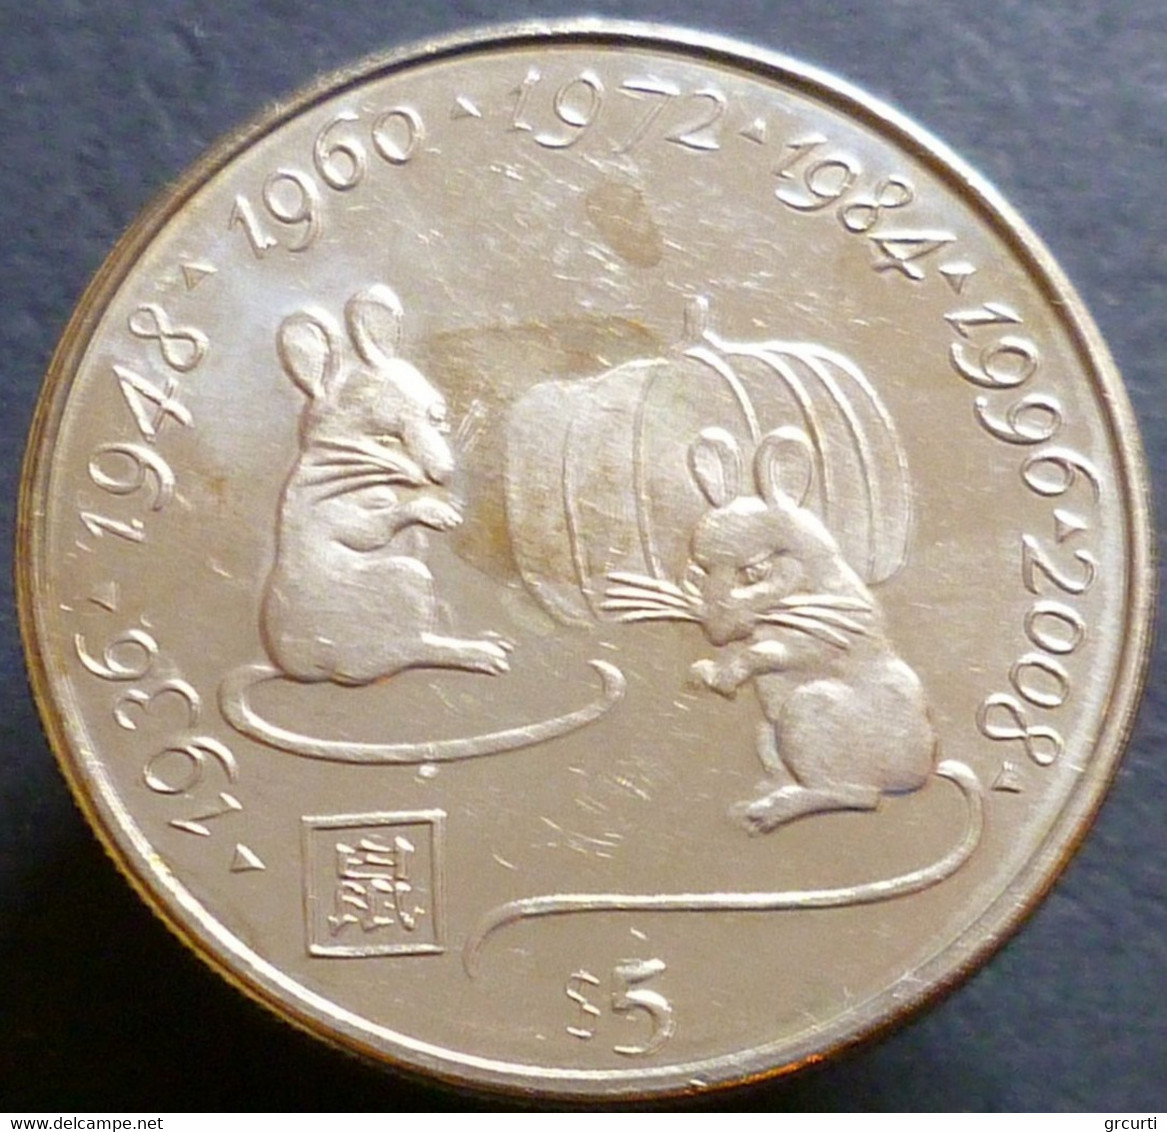 Liberia - 5 Dollari 2000 - Millenium - Anni Del Topo - KM# 351 - Liberia